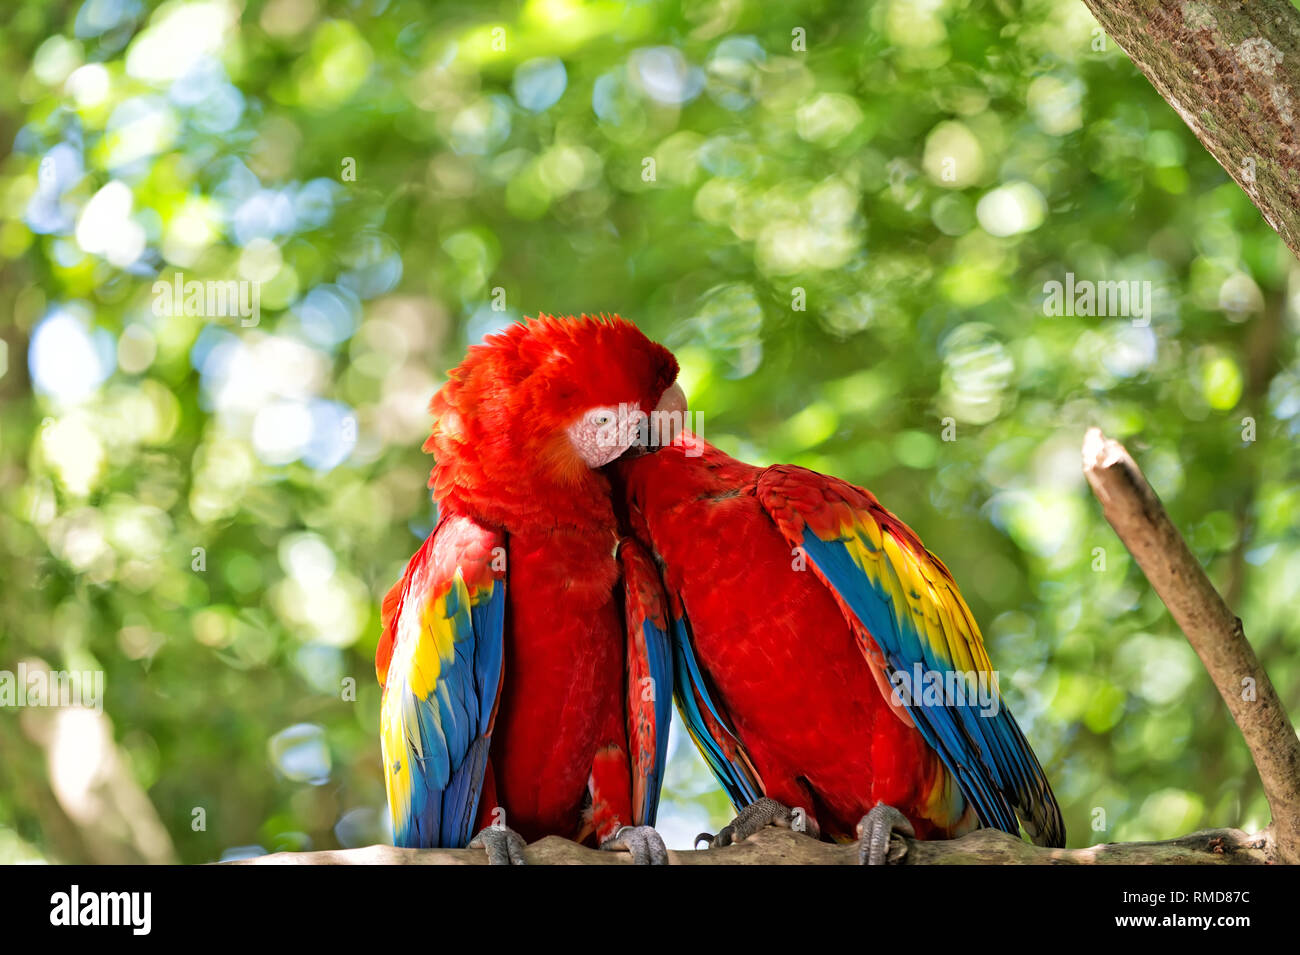 Linda pareja de loros o aves, guacamayas o ara con rojo, amarillo y azul,  plumas, plumaje, sentarse sobre la rama de un árbol con hojas verdes día  soleado en bokeh de fondo